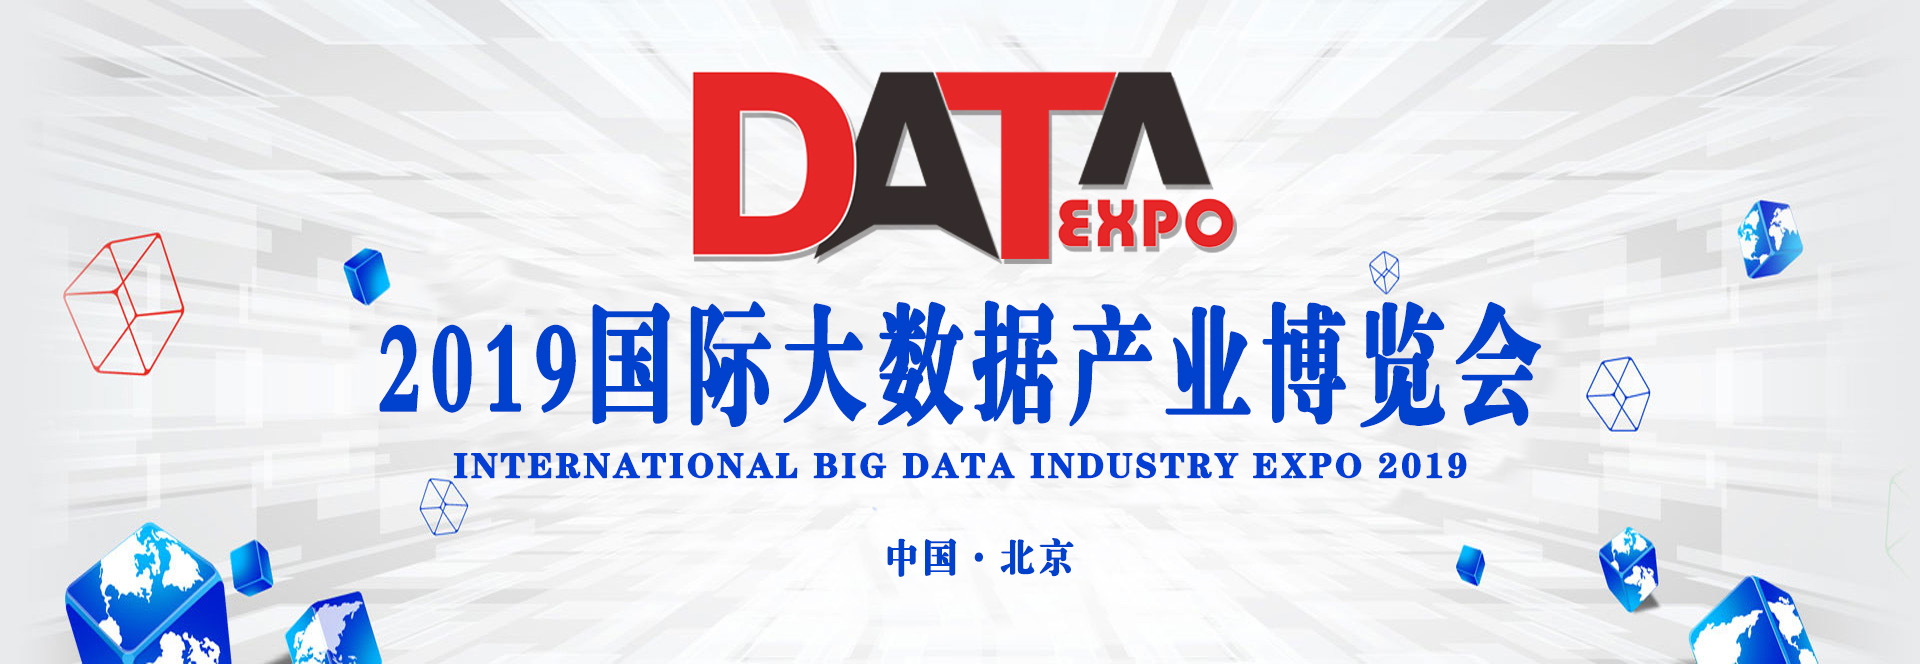 2019北京国际大数据产业博览会